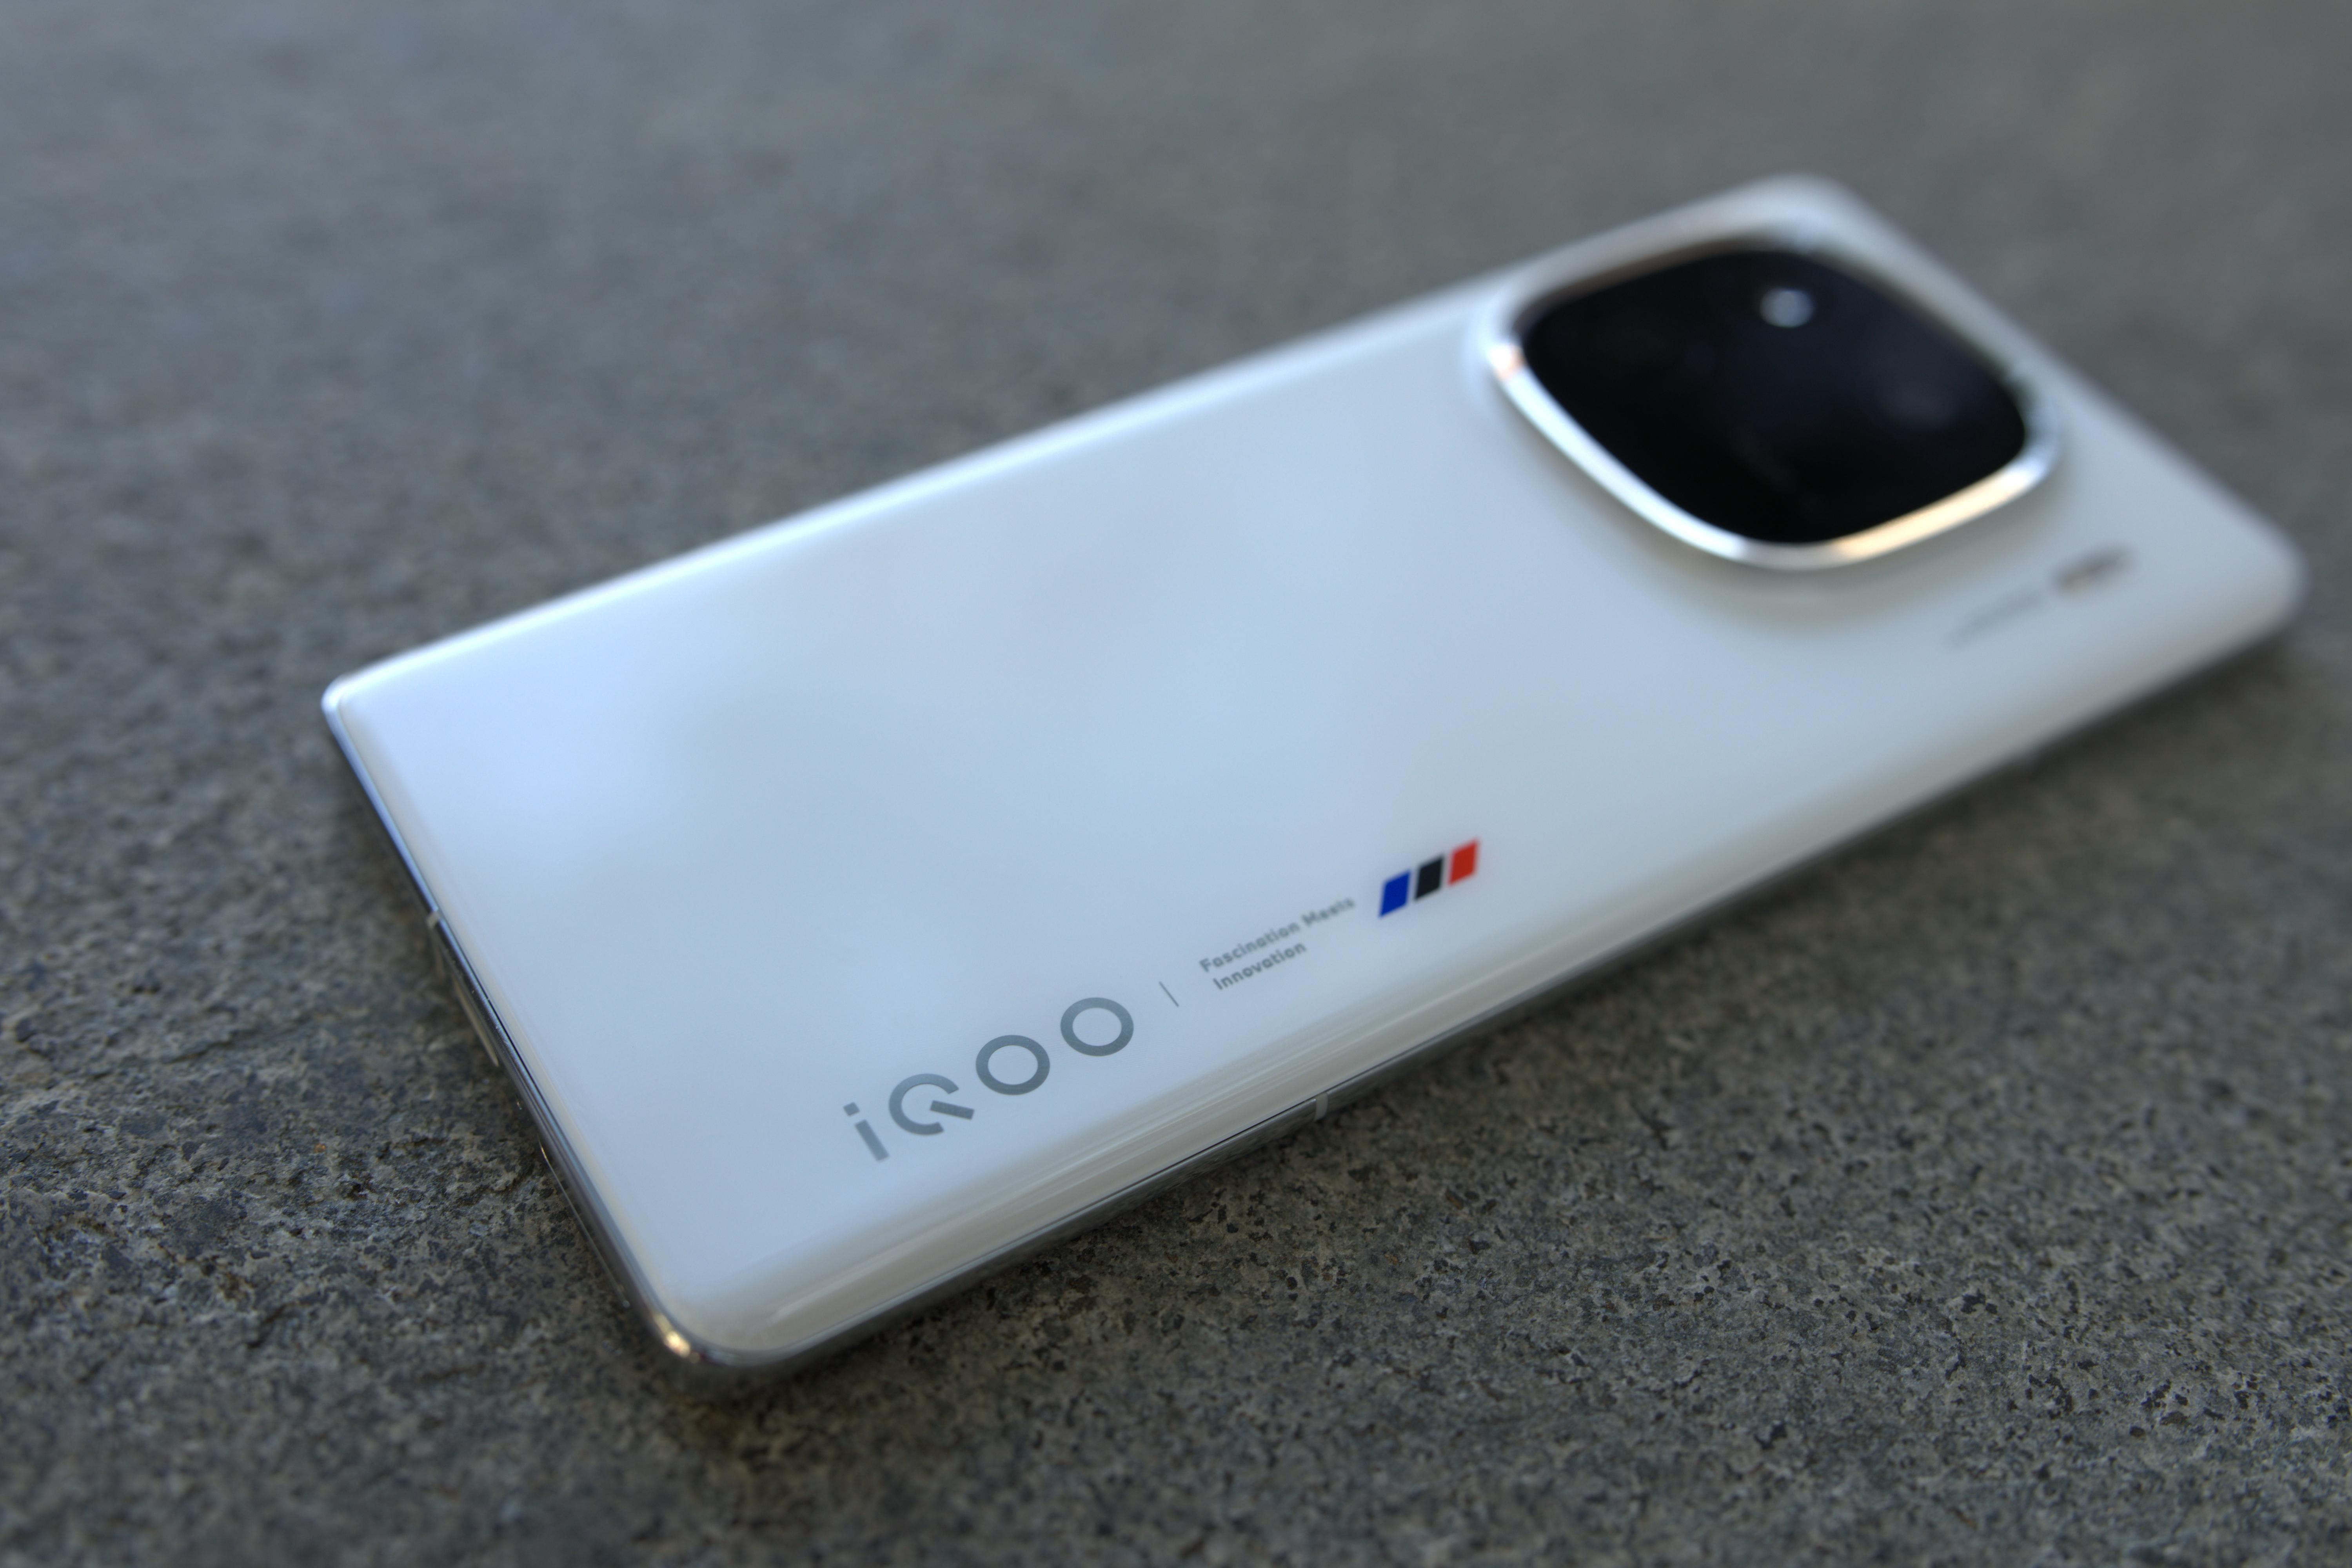 iQOO12手机参数配置详情(2023建议买的vivo手机)